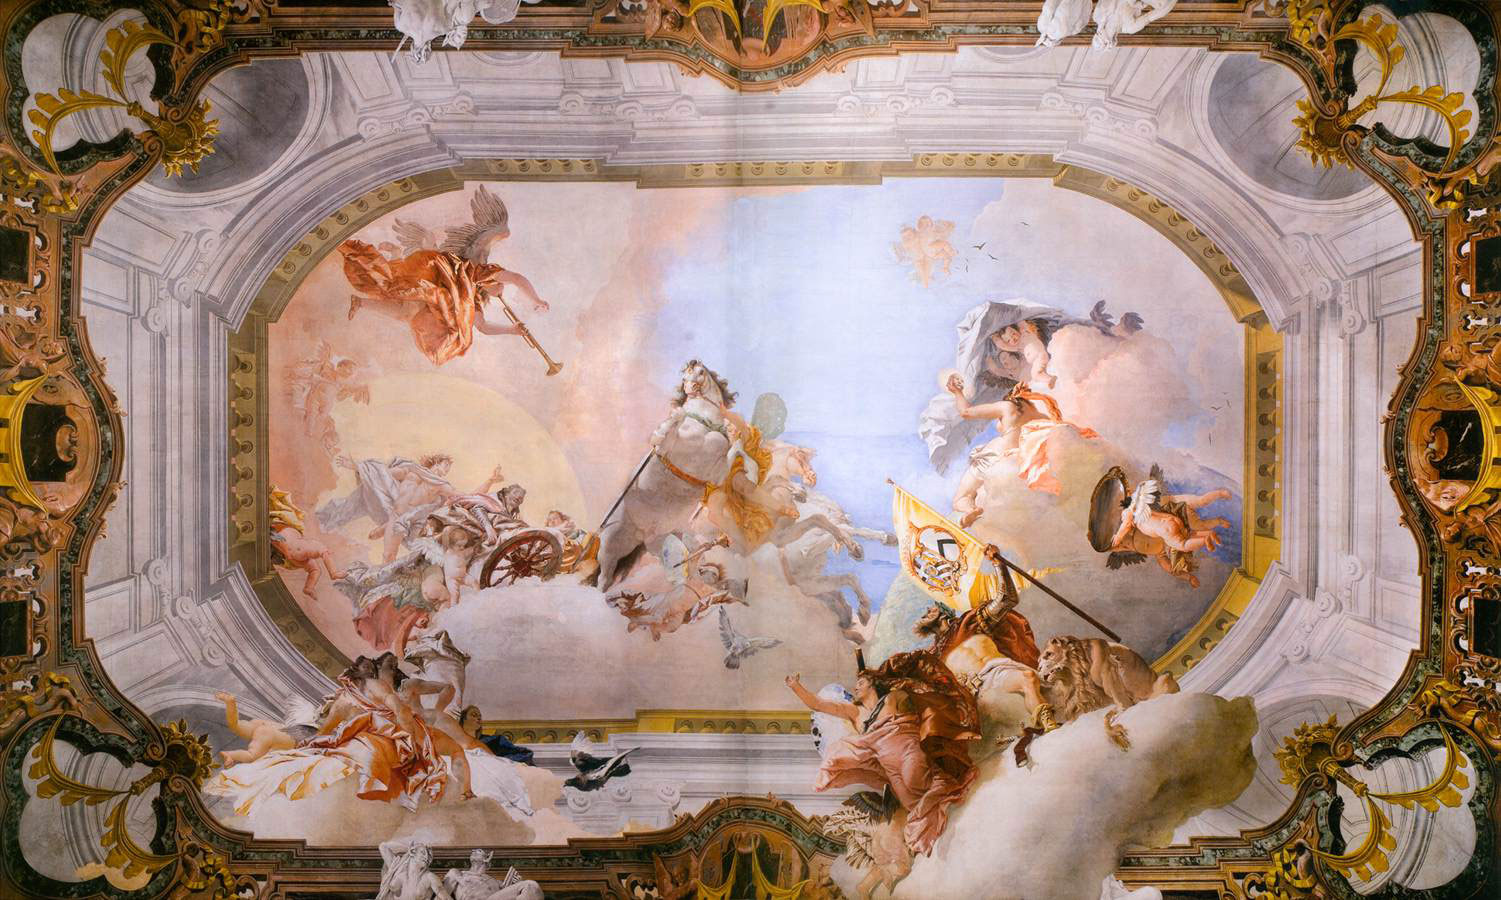 Trompe l'oeil - nghệ thuật đánh lừa thị giác được dùng trong thiết kế nội thất Rococo